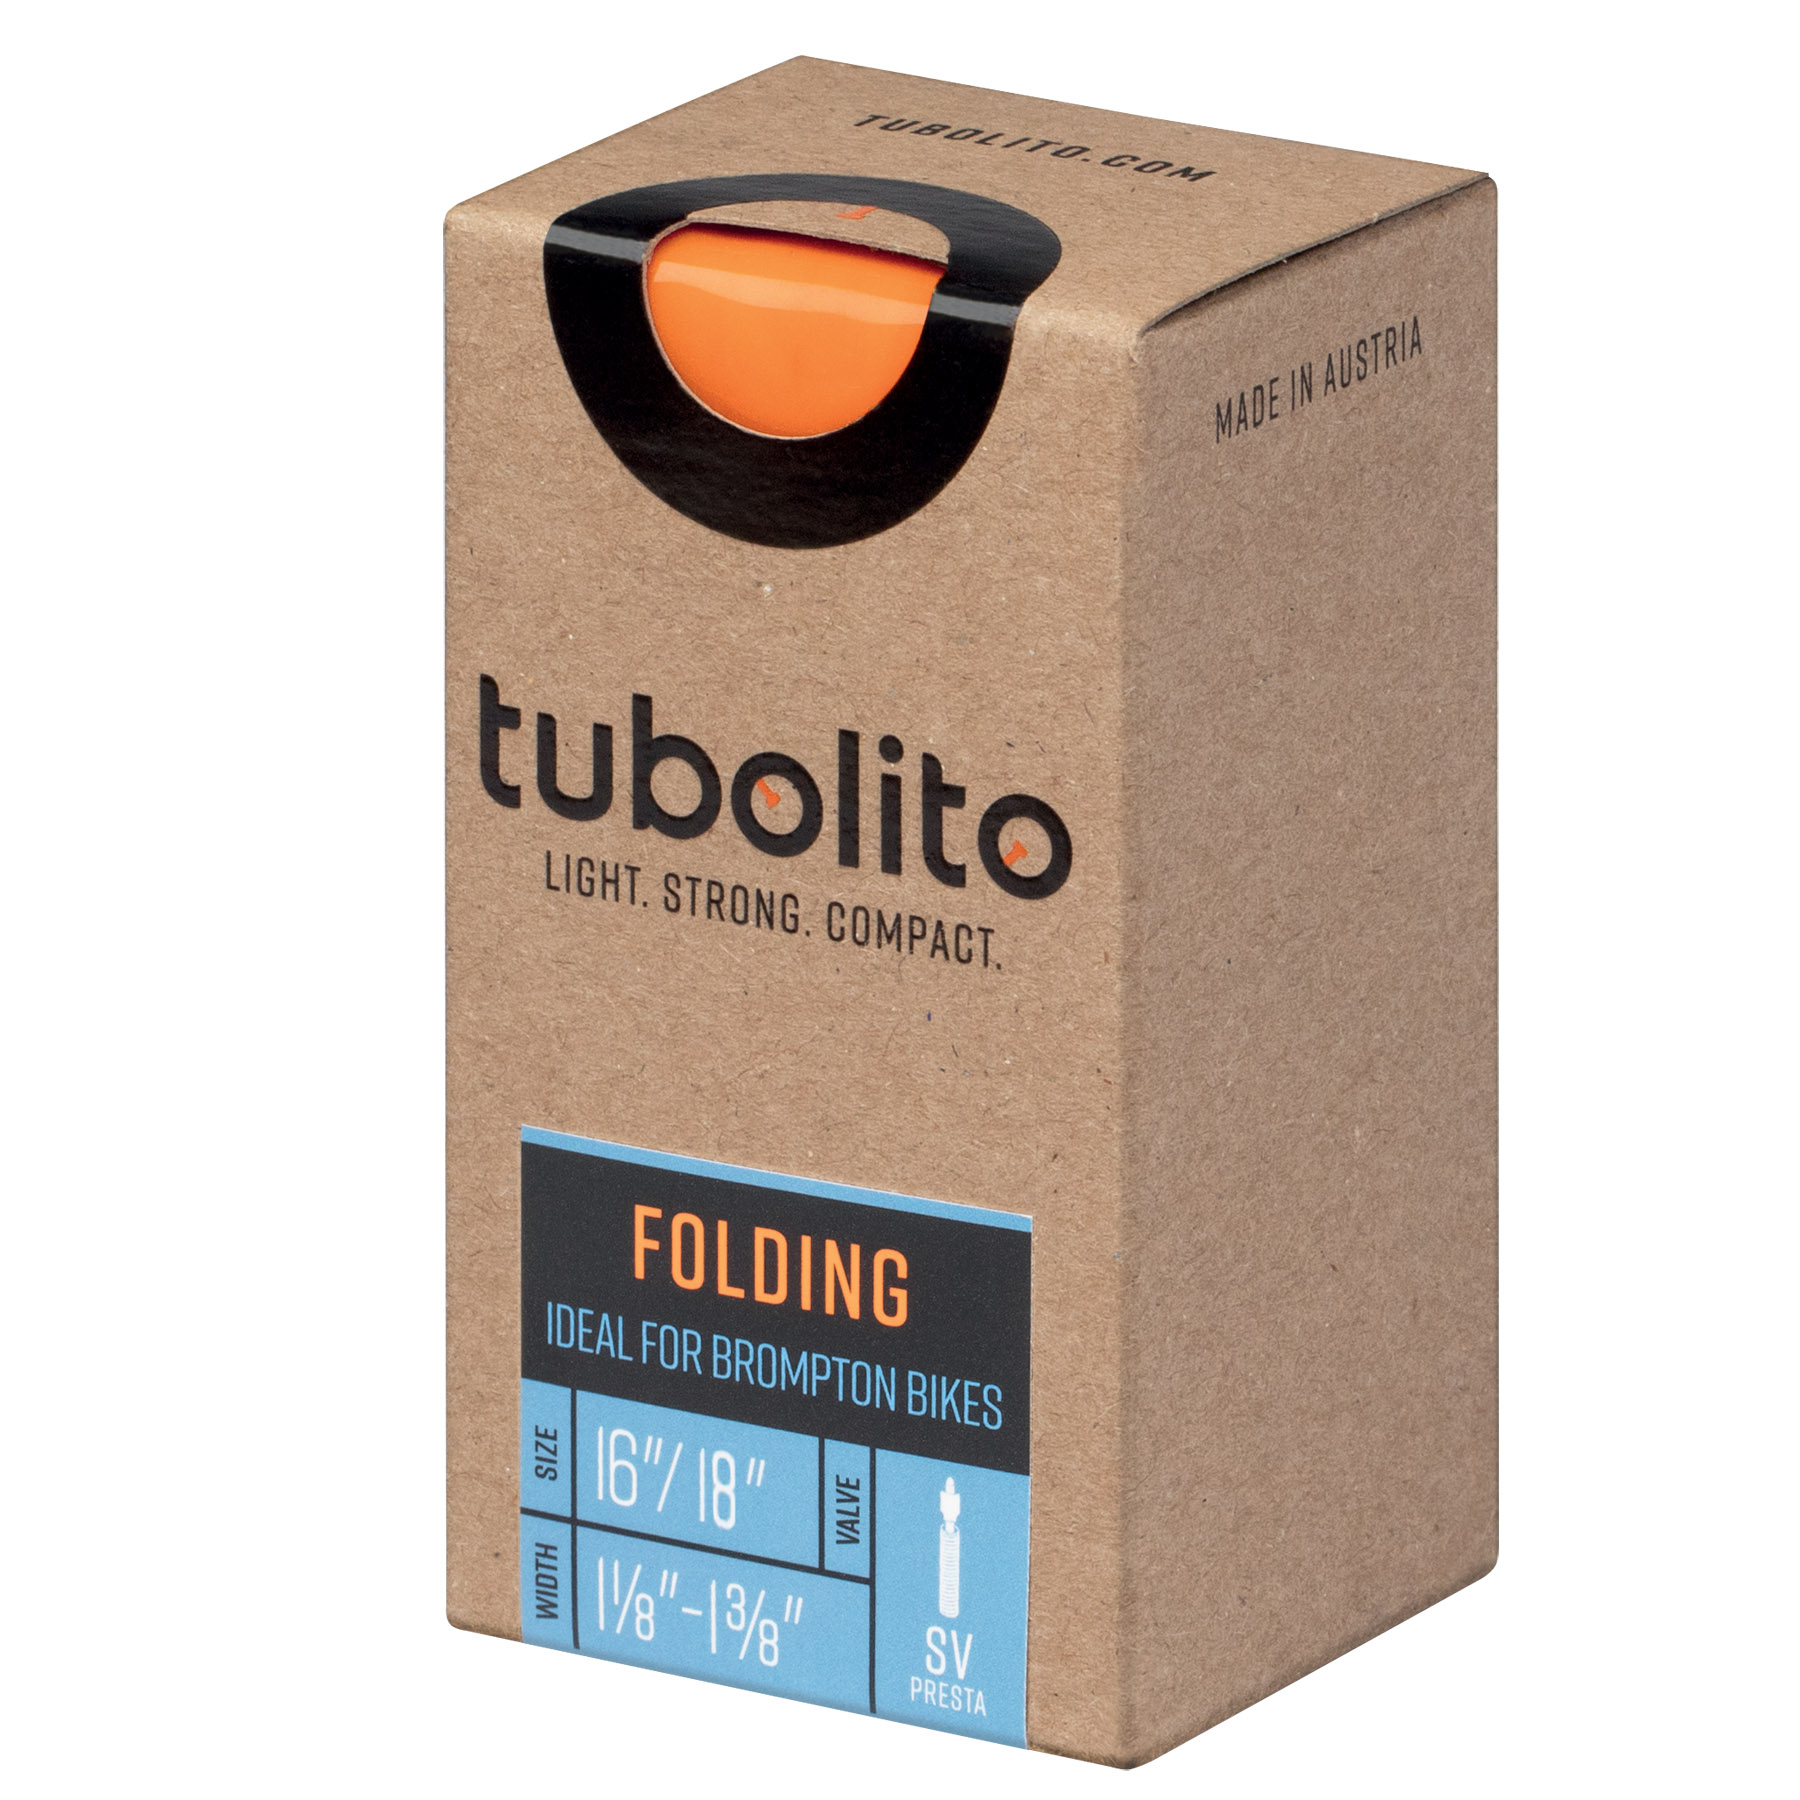 Productfoto van Tubolito Folding Binnenband - 16/18&quot; | 1 1/8&quot;-1 3/8&quot; | SV